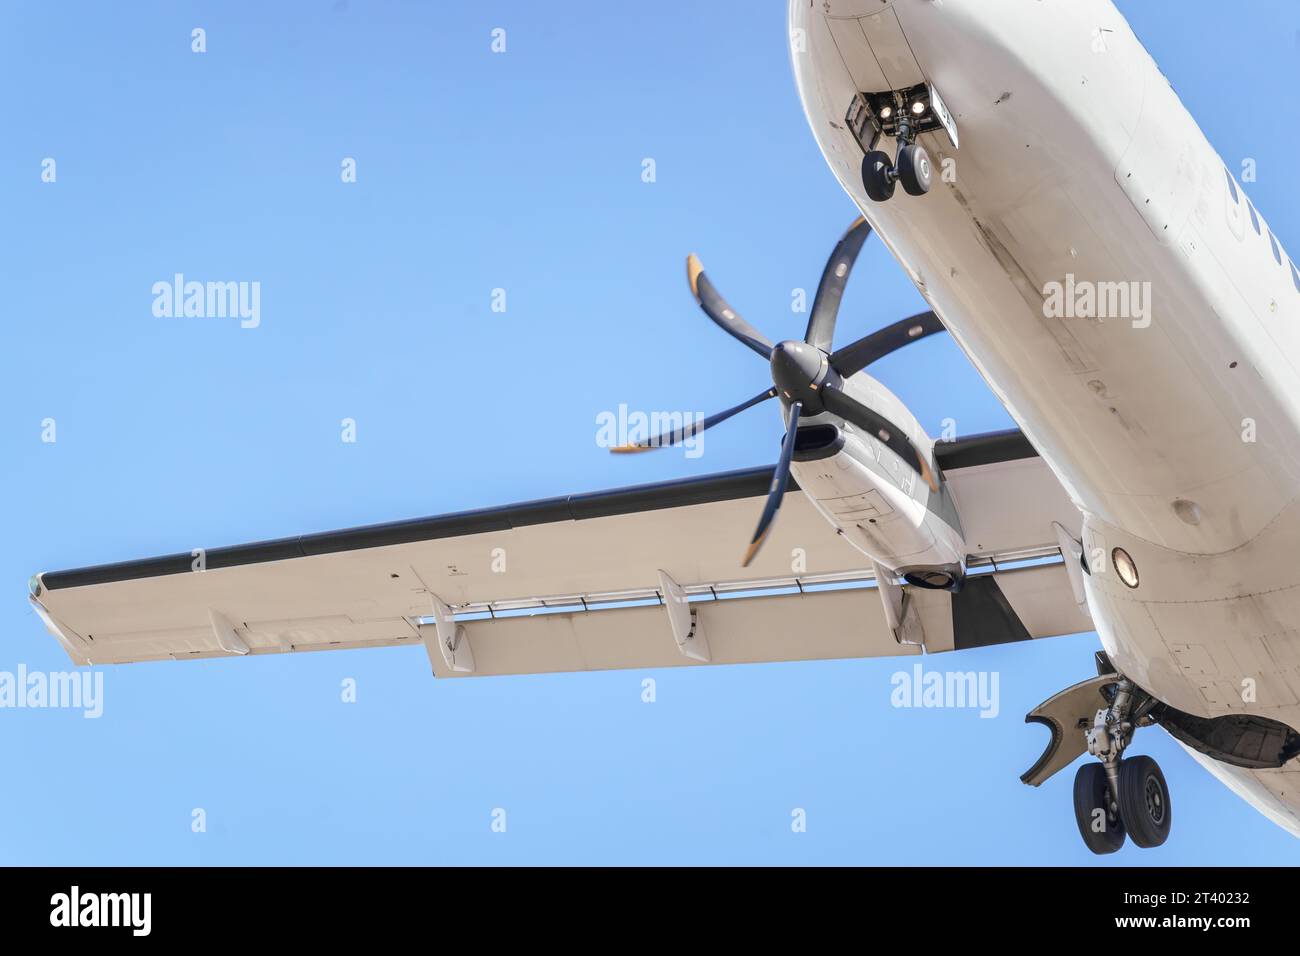 Dettagli di un velivolo ATR 72, un aeromobile regionale passeggeri a turboelica bimotore a corto raggio. Atterraggio aereo. Foto Stock